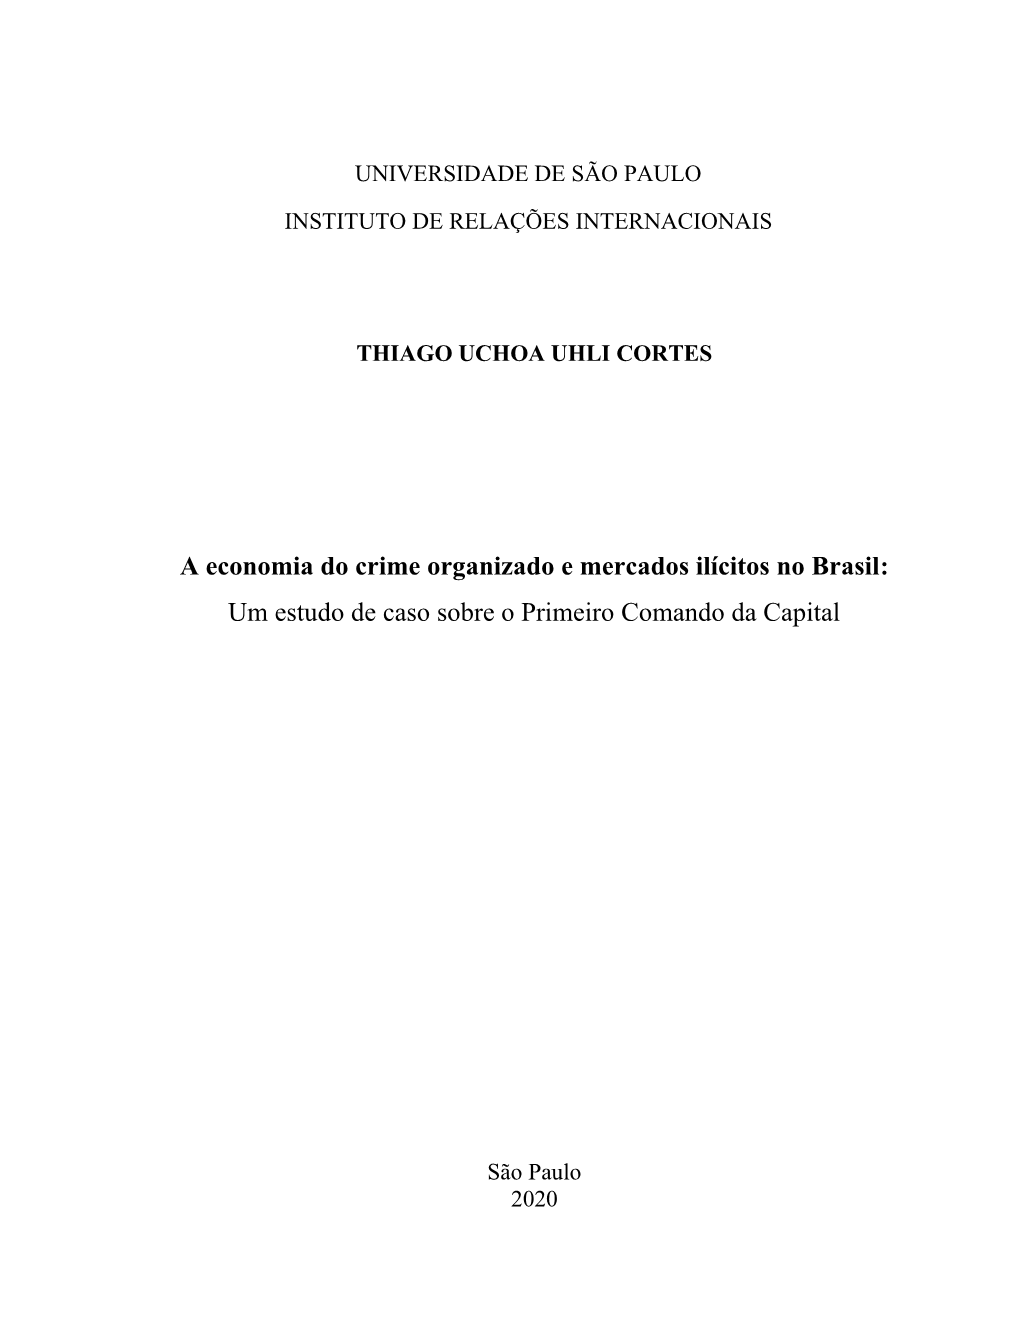 A Economia Do Crime Organizado E Mercados Ilícitos No Brasil: Um Estudo De Caso Sobre O Primeiro Comando Da Capital